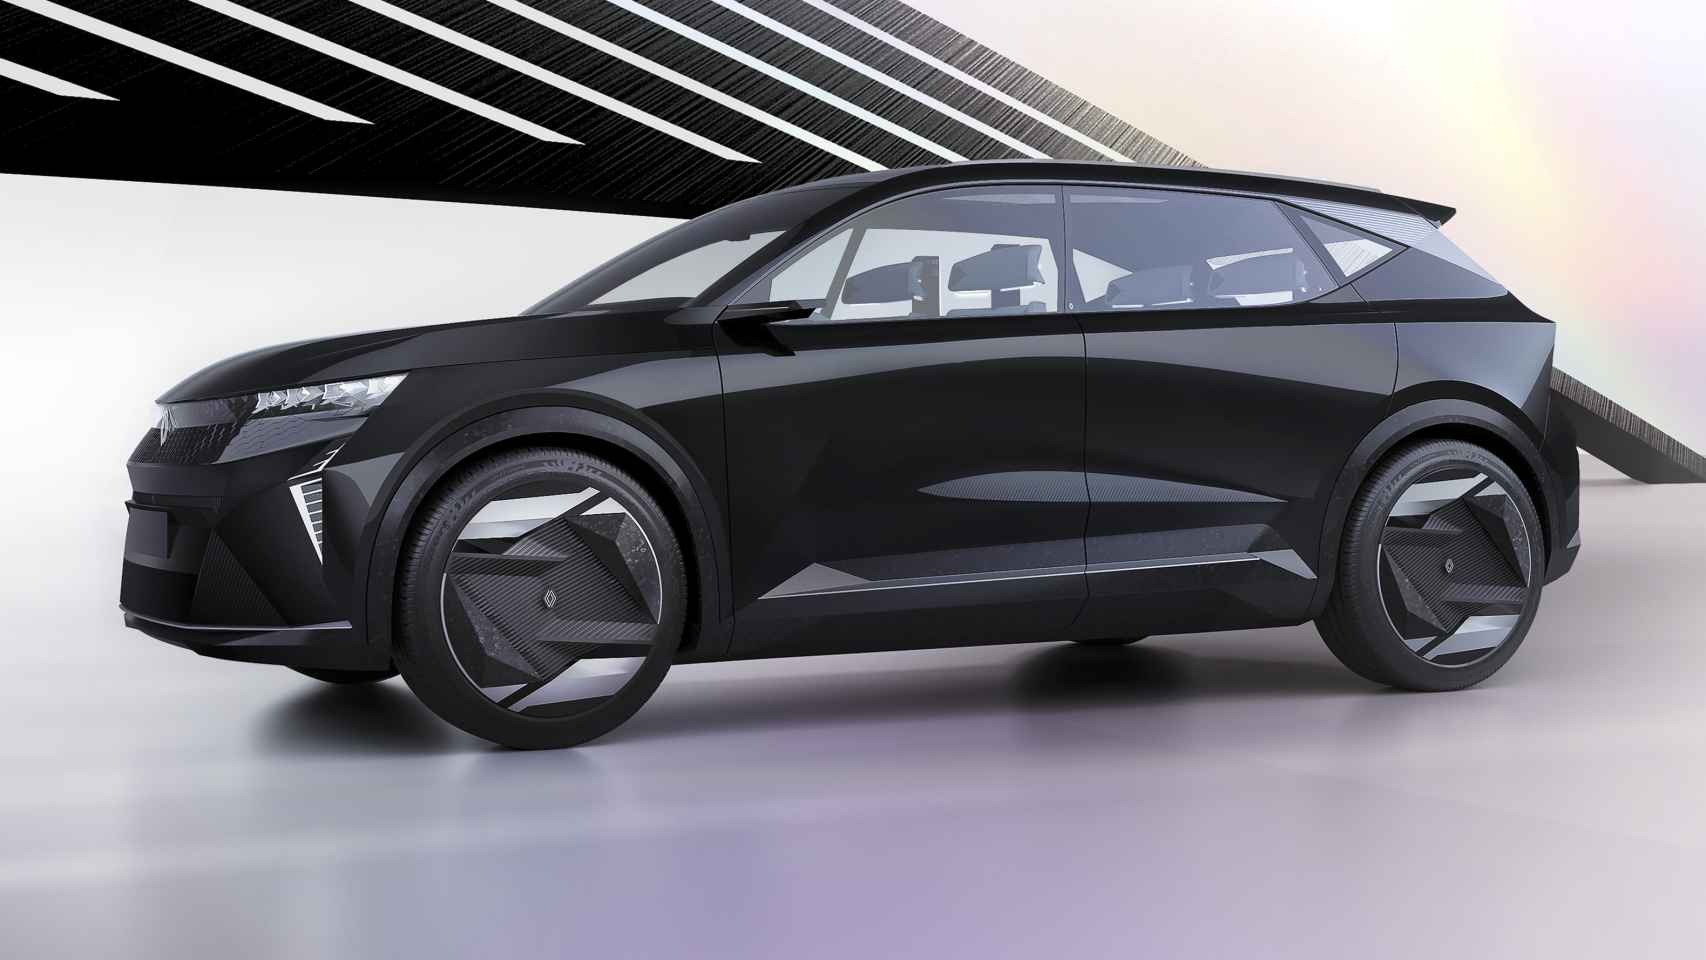 El Renault Scénic Vision supone la movilidad del futuro dentro del marco de la sostenibilidad y respecto por el medio ambiente.